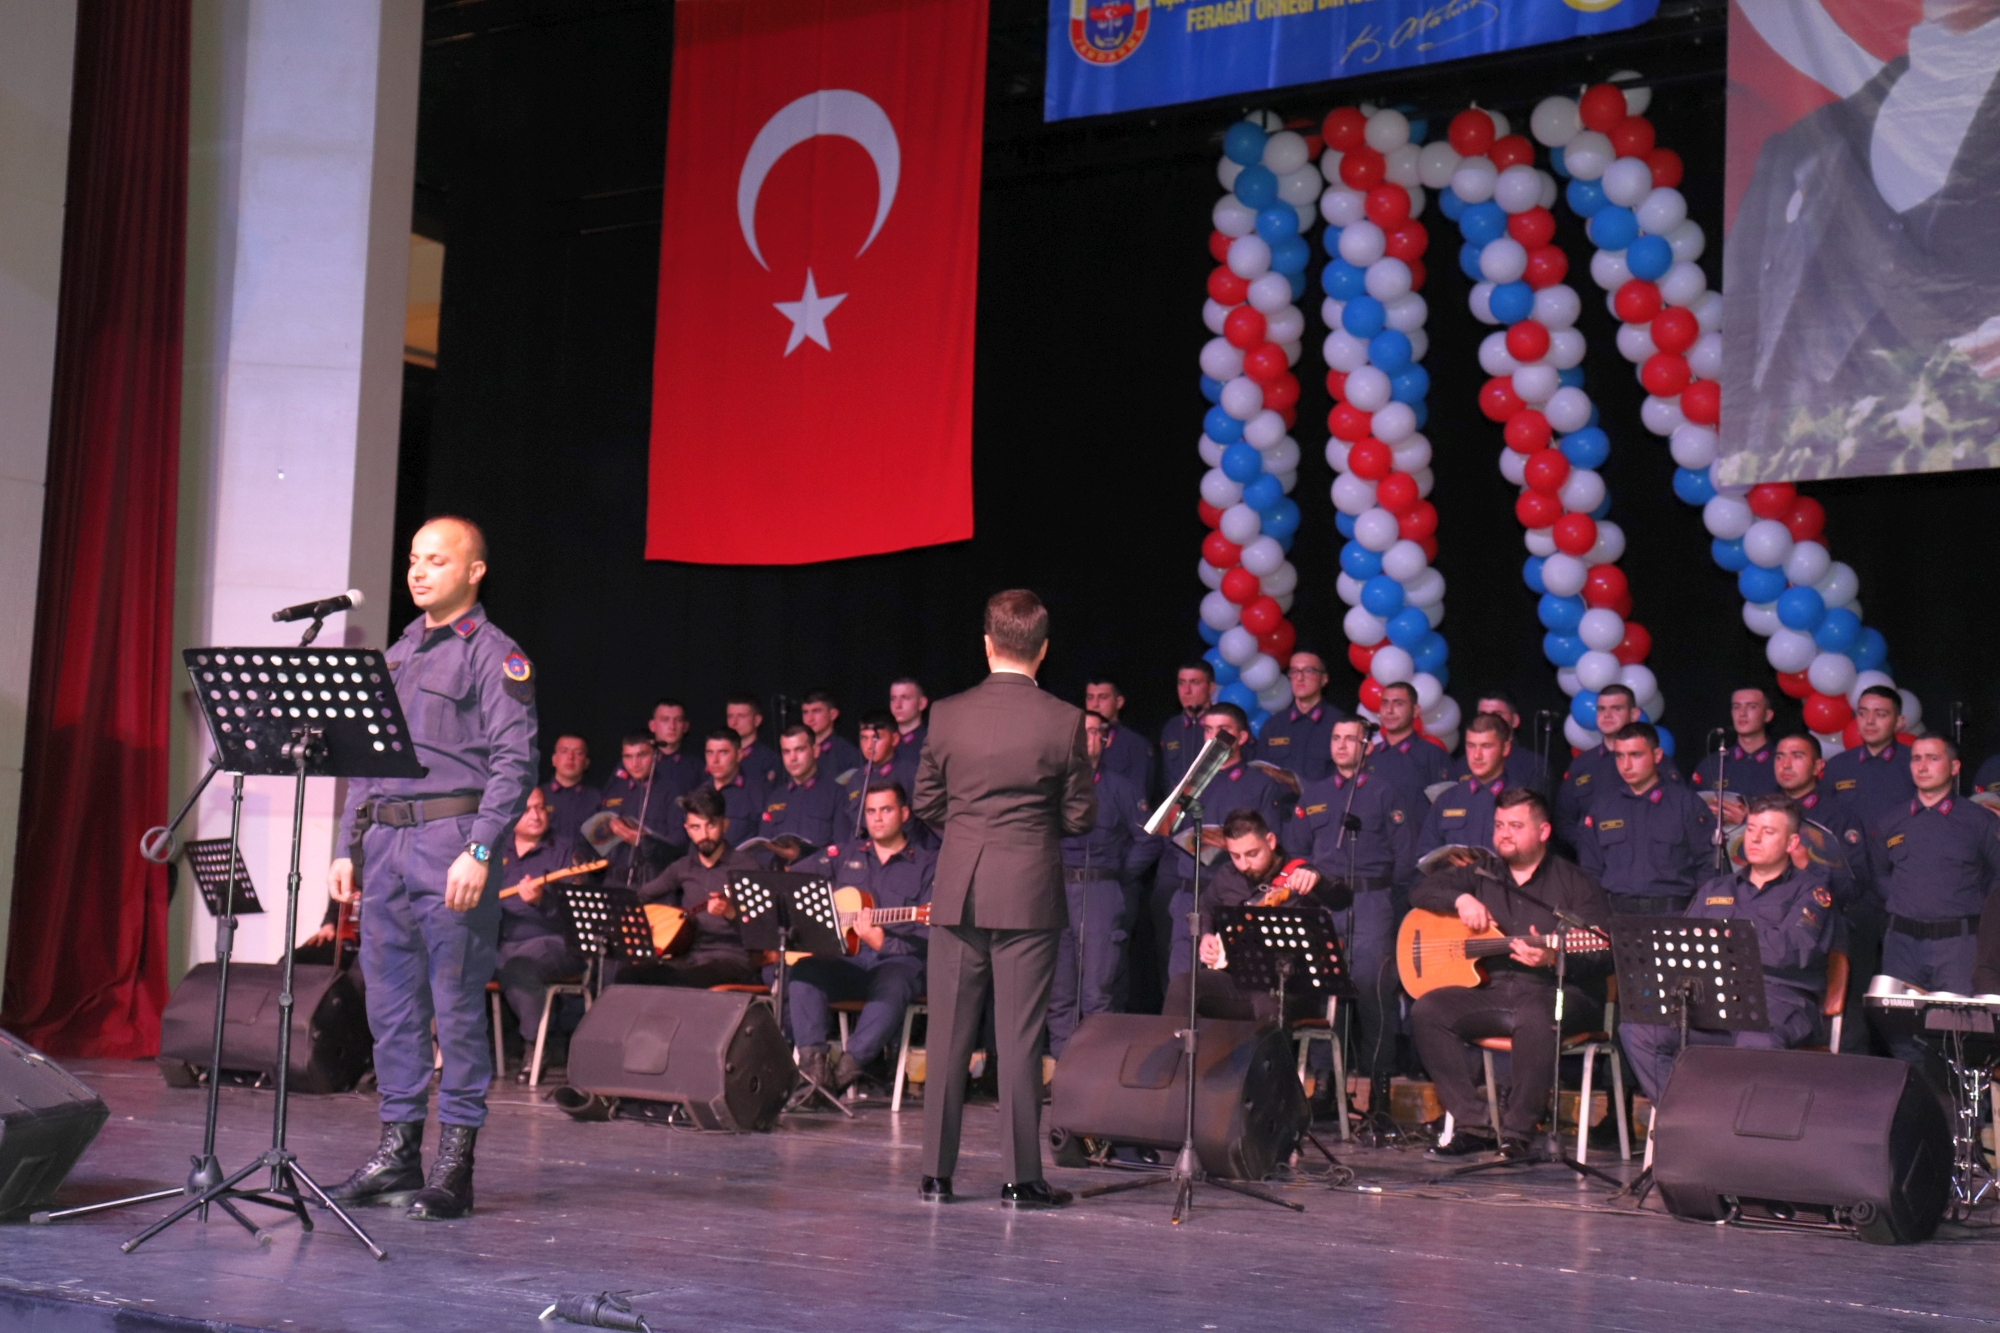 Malatya İl Jandarma Komutanlığı bünyesinde görev yapan jandarma personelinden oluşturulan Jandarma Korusu ilk konserini verdi.